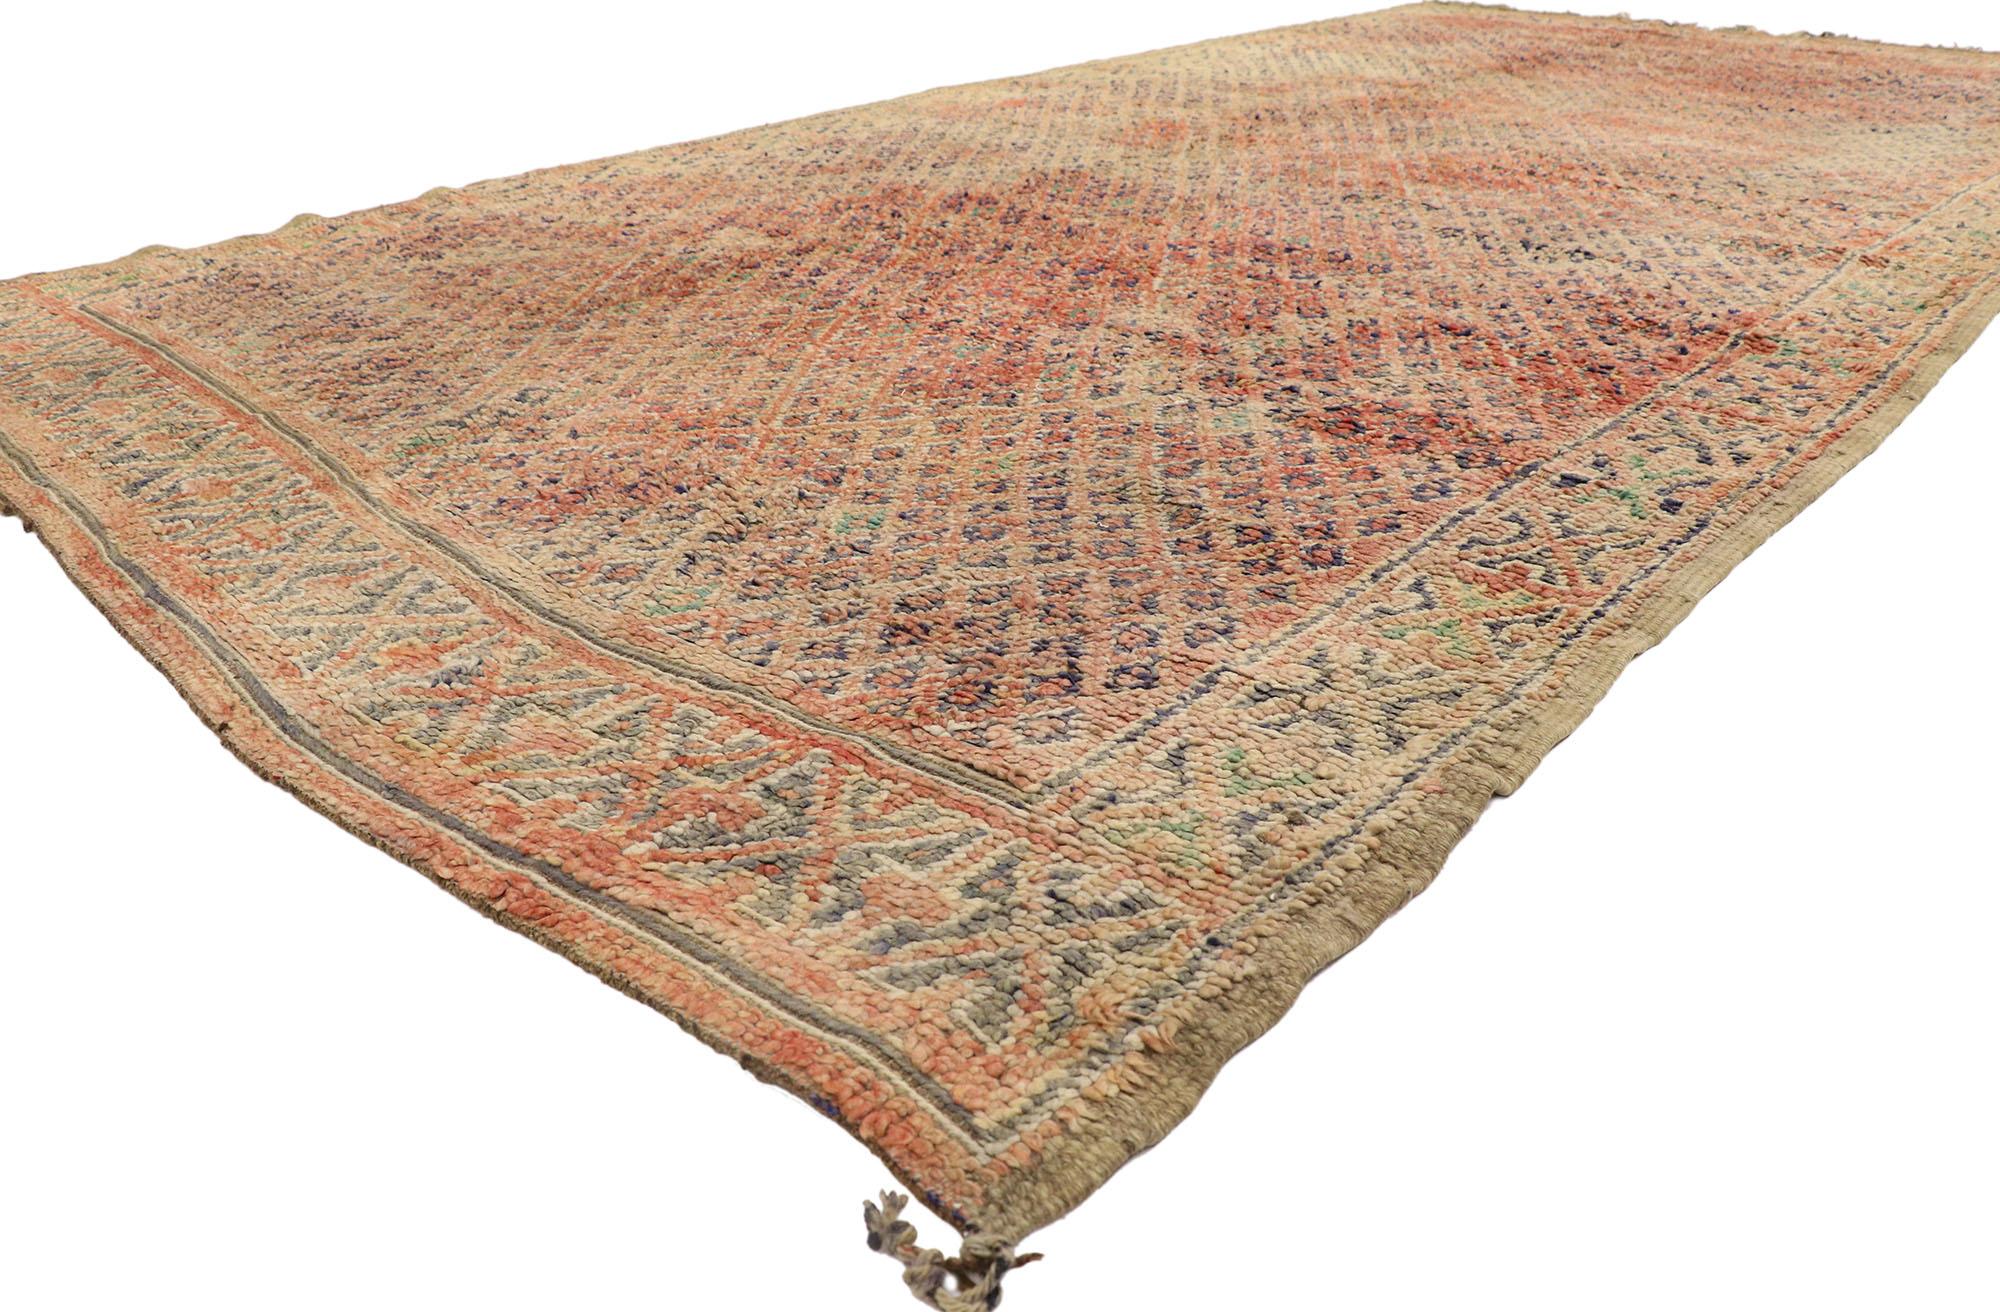 21438 Vintage Beni MGuild Marokkanischer Teppich, 08'05 x 12'01. Die Beni M'Guild Rugs stammen vom Stamm der Beni M'Guild im Mittleren Atlasgebirge in Marokko und verkörpern eine geschätzte Tradition, die von erfahrenen Berberfrauen in sorgfältiger